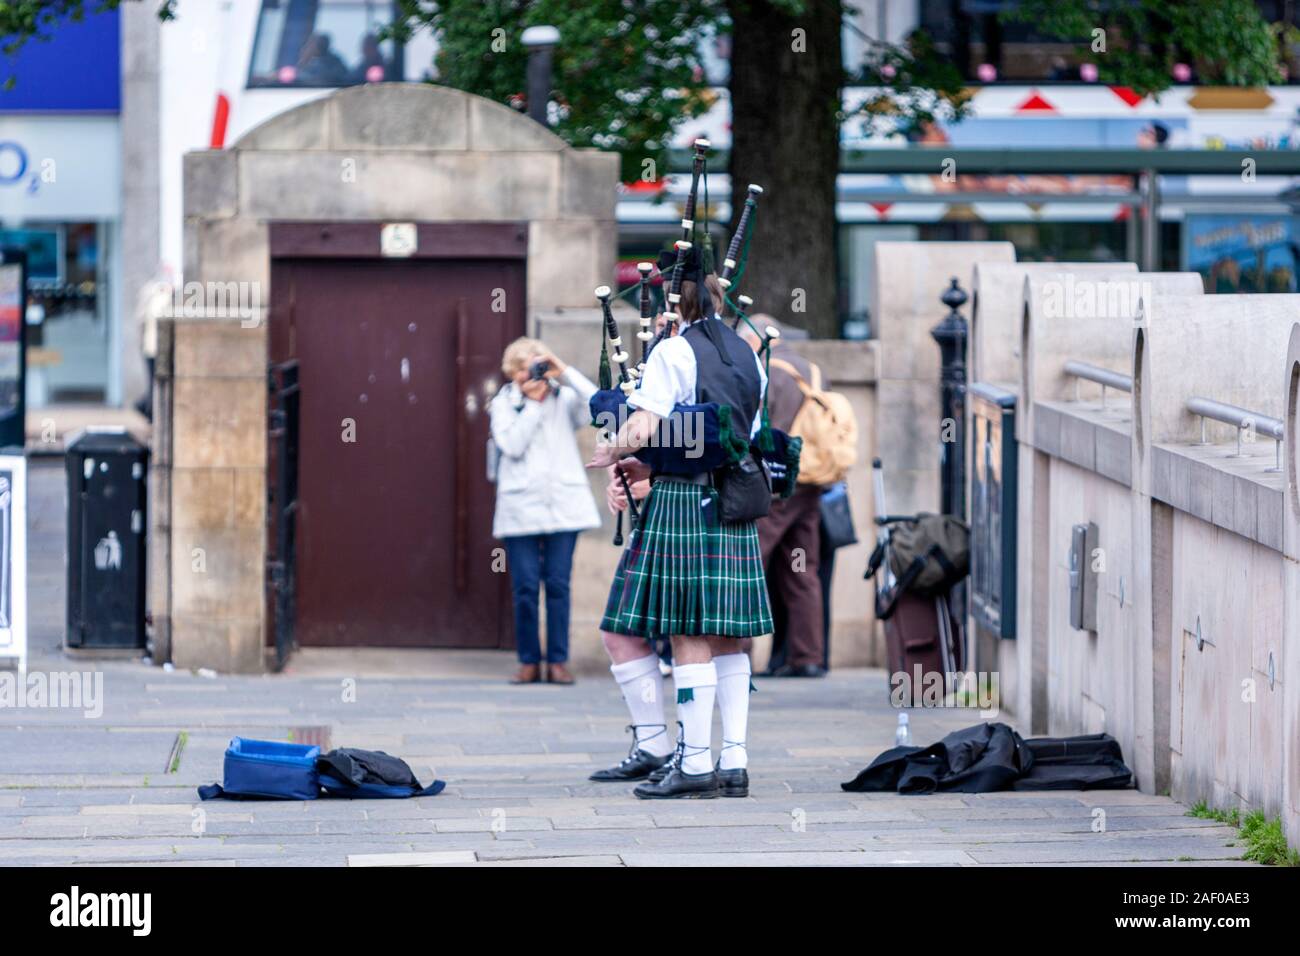 Turistica prendendo foto a un busker cornamuse nel Royal Scottish Academy, il tumulo, Edimburgo, Scozia, Regno Unito Foto Stock